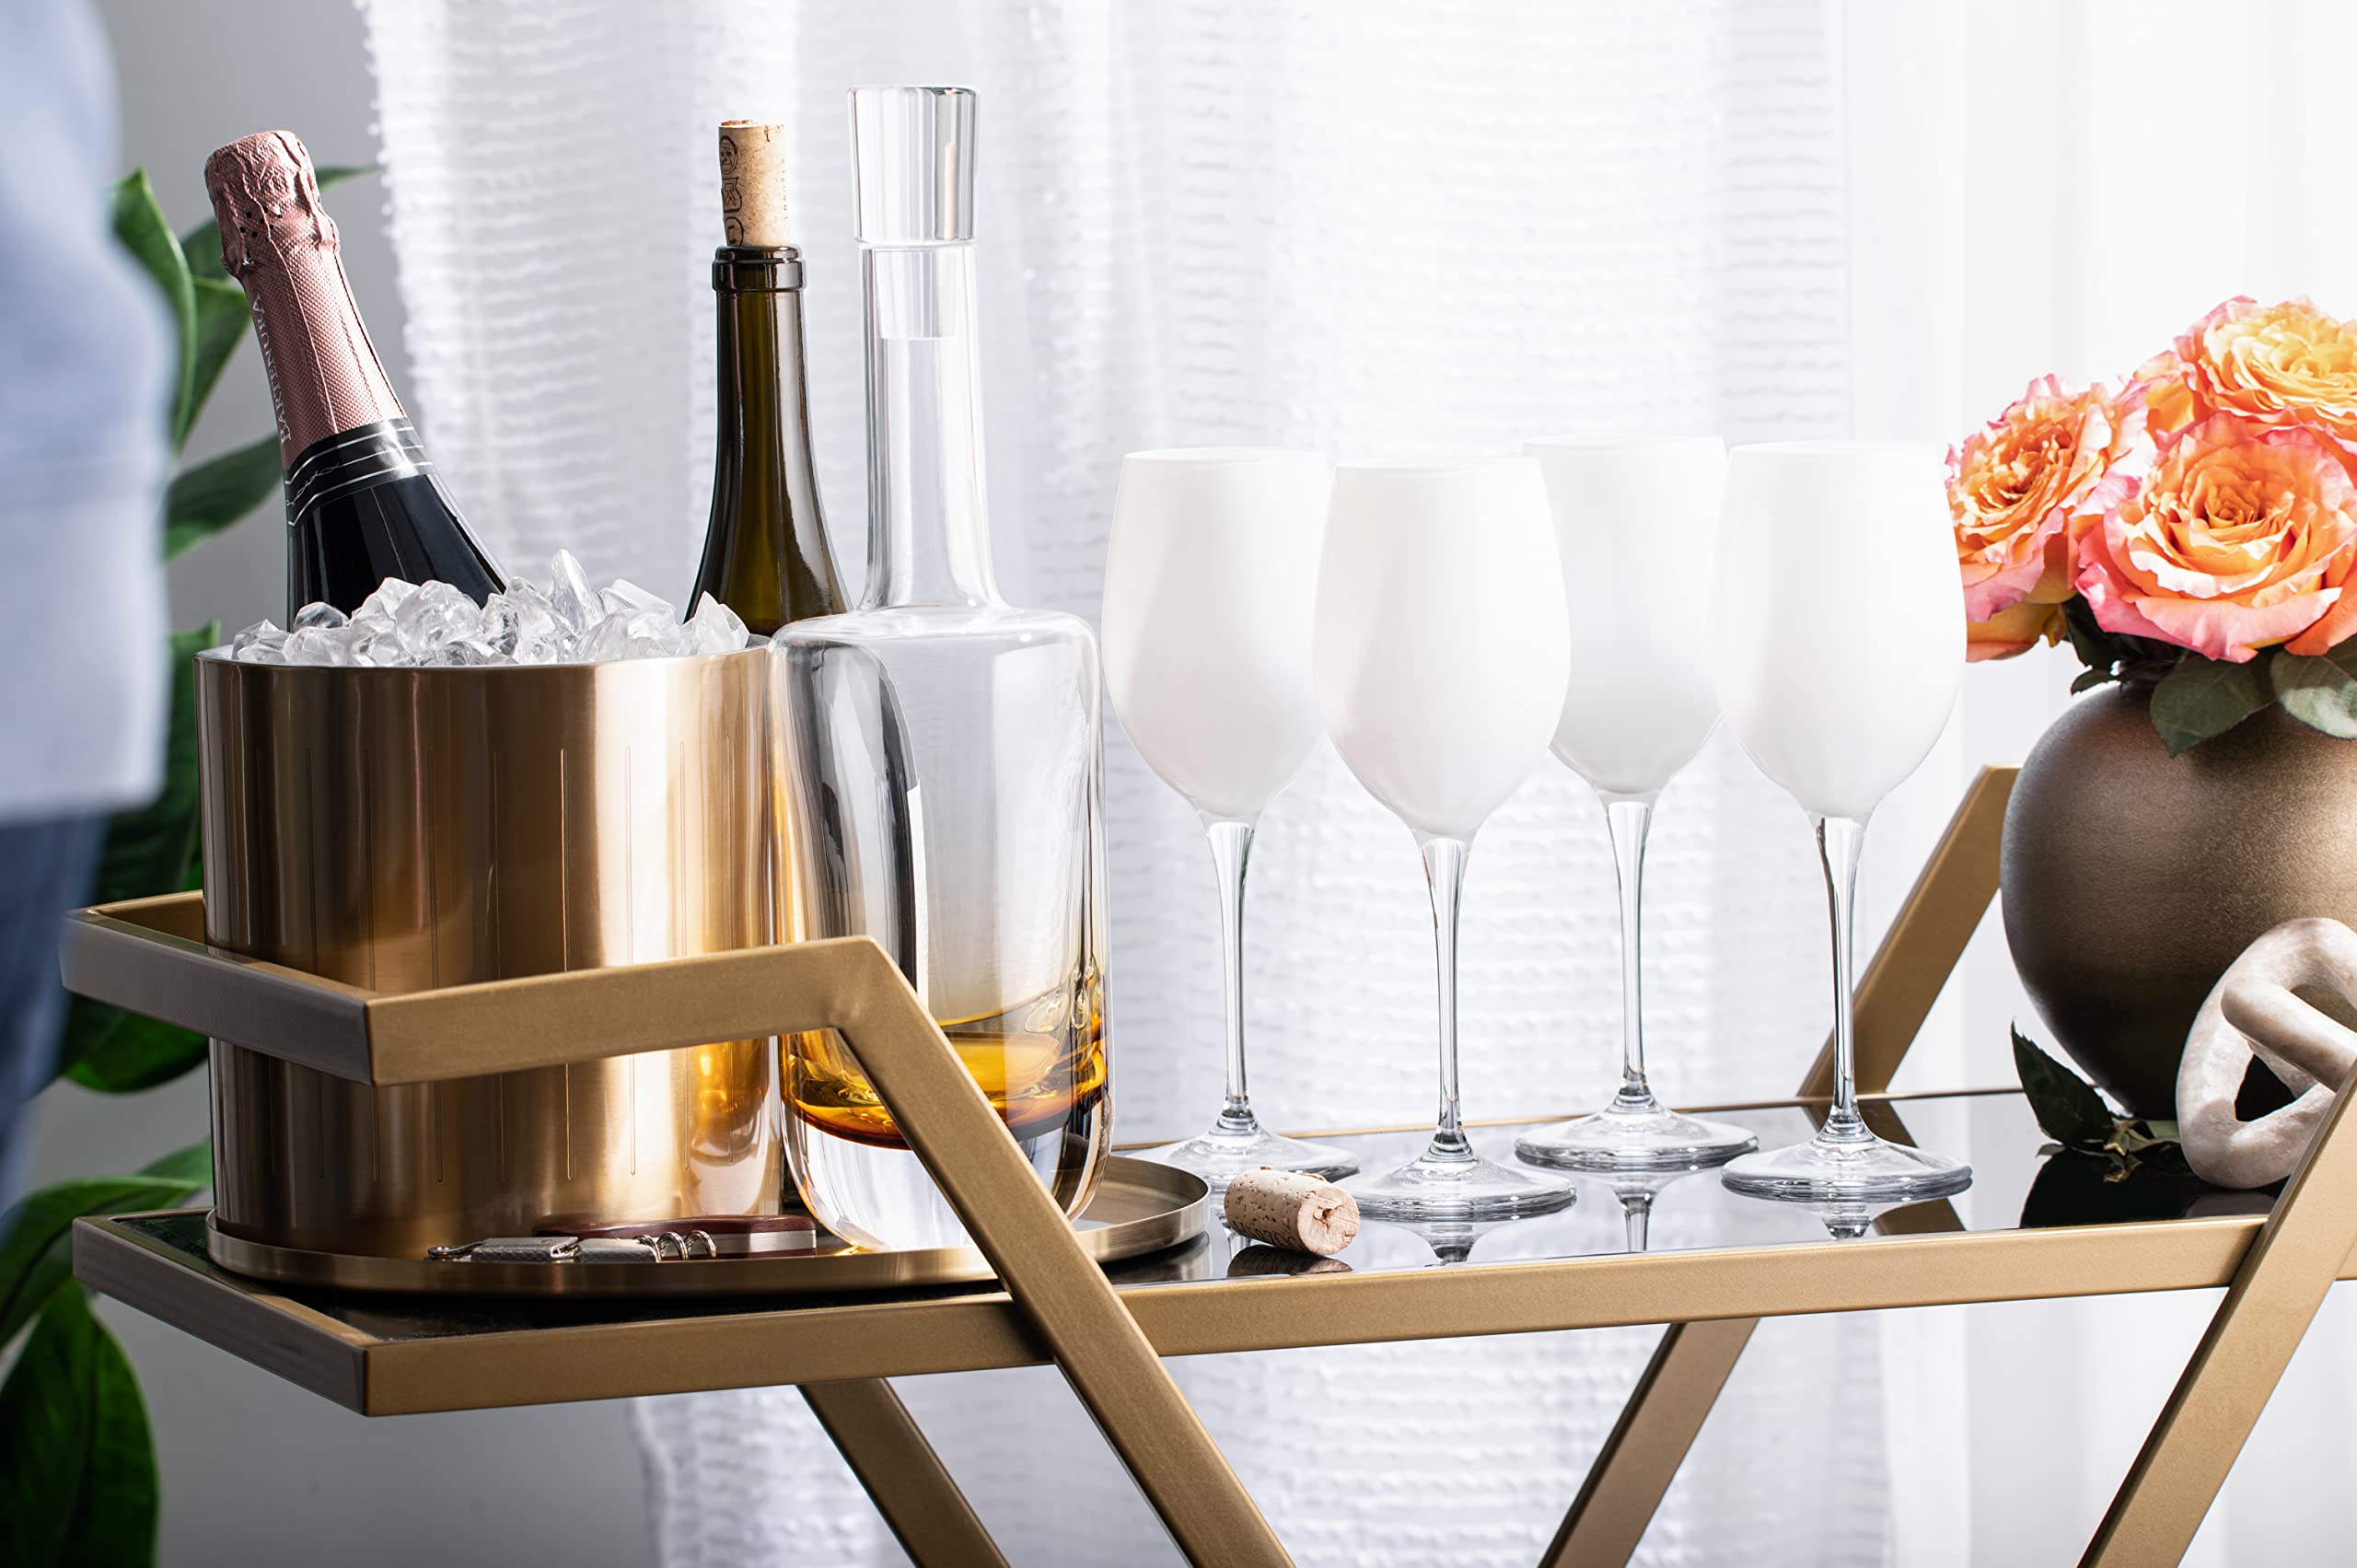 Barski Goblet - White Wine Glass - Crystal Glass - Water Glass - Opal White - Stemmed Glasses - Set of 6 Goblets - 14 oz Made in Europe